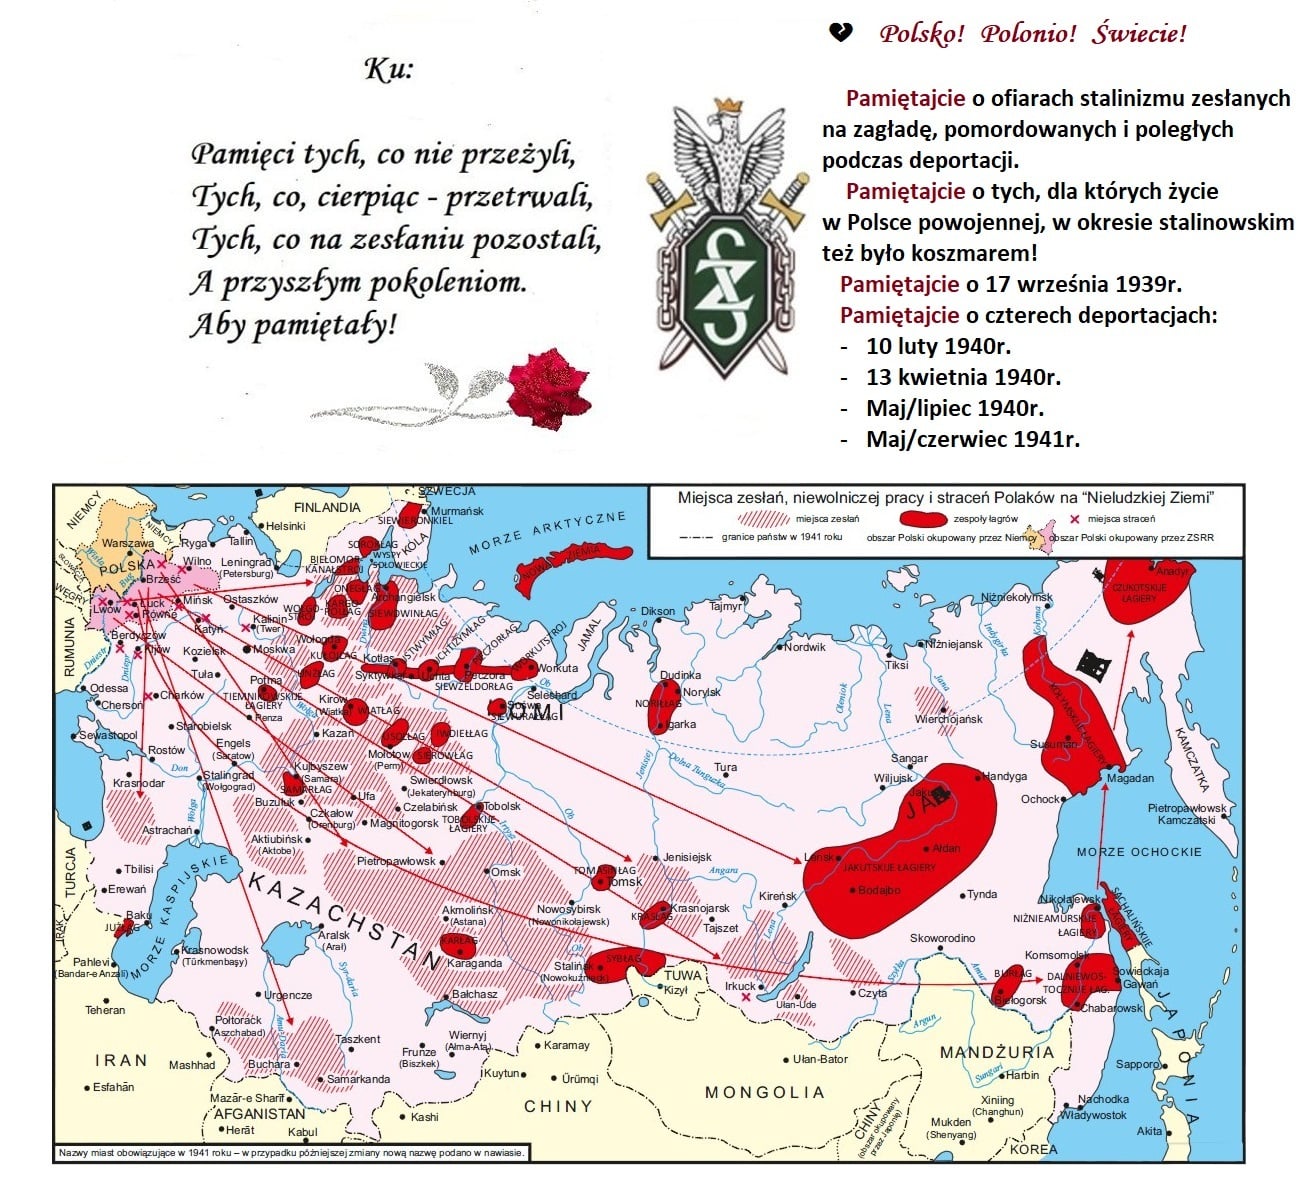 Miejsca zesłań, niewolniczej pracy i straceń Polaków 1939-1941 (do ataku sojusznika na Rosję)